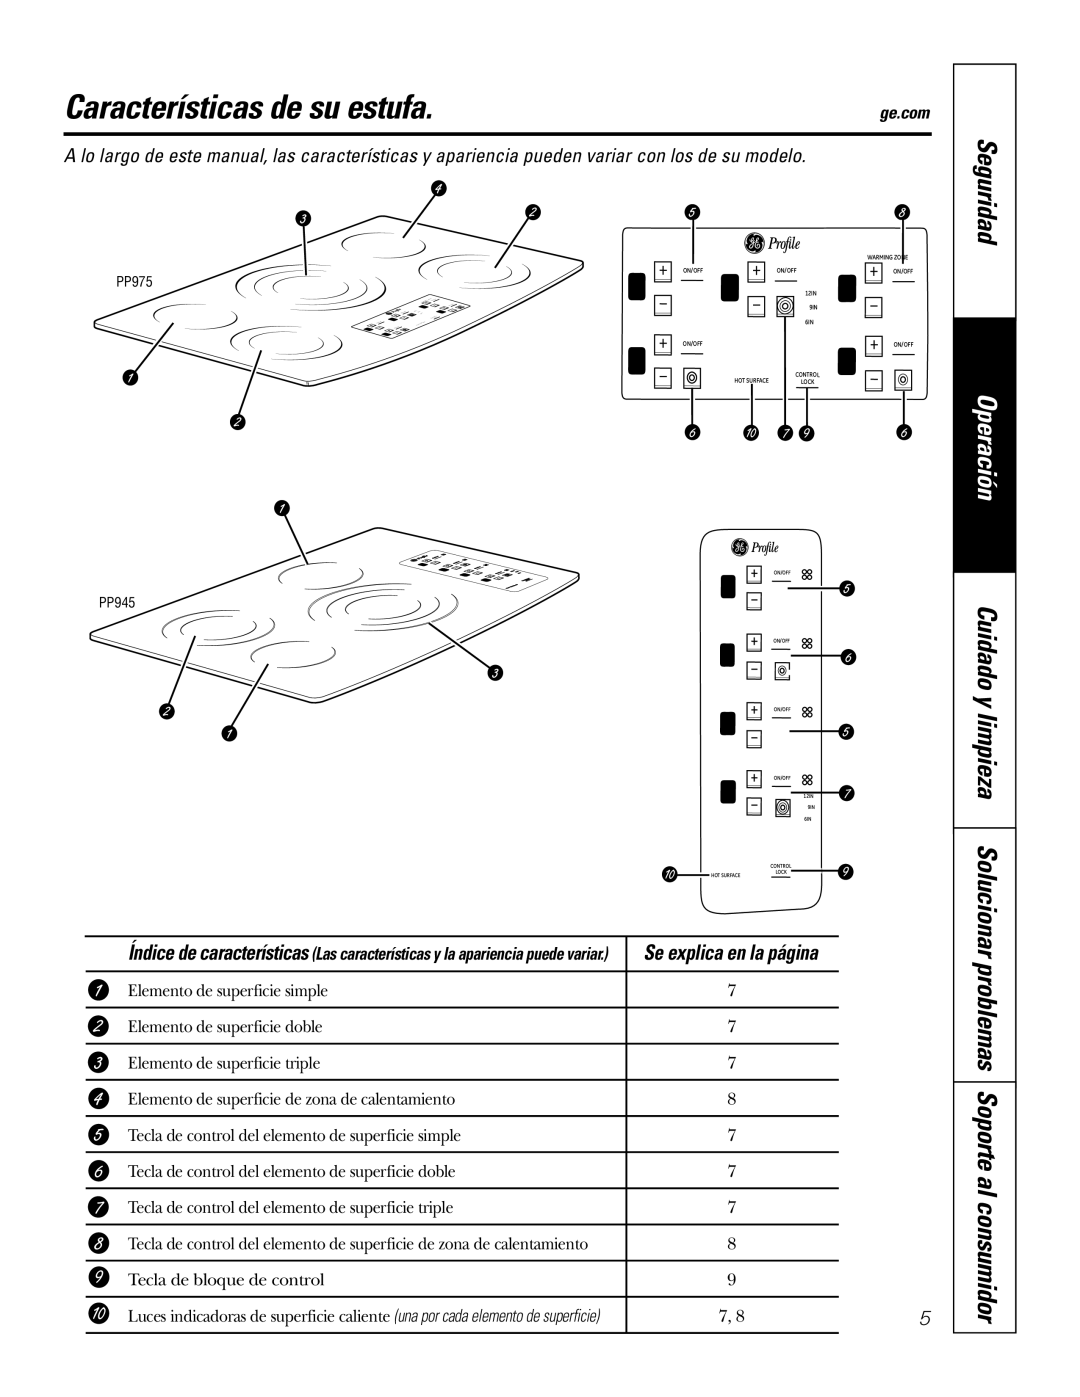 GE PP975, PP945 owner manual Características de su estufa, Seguridad, Operación, Se explica en la página 